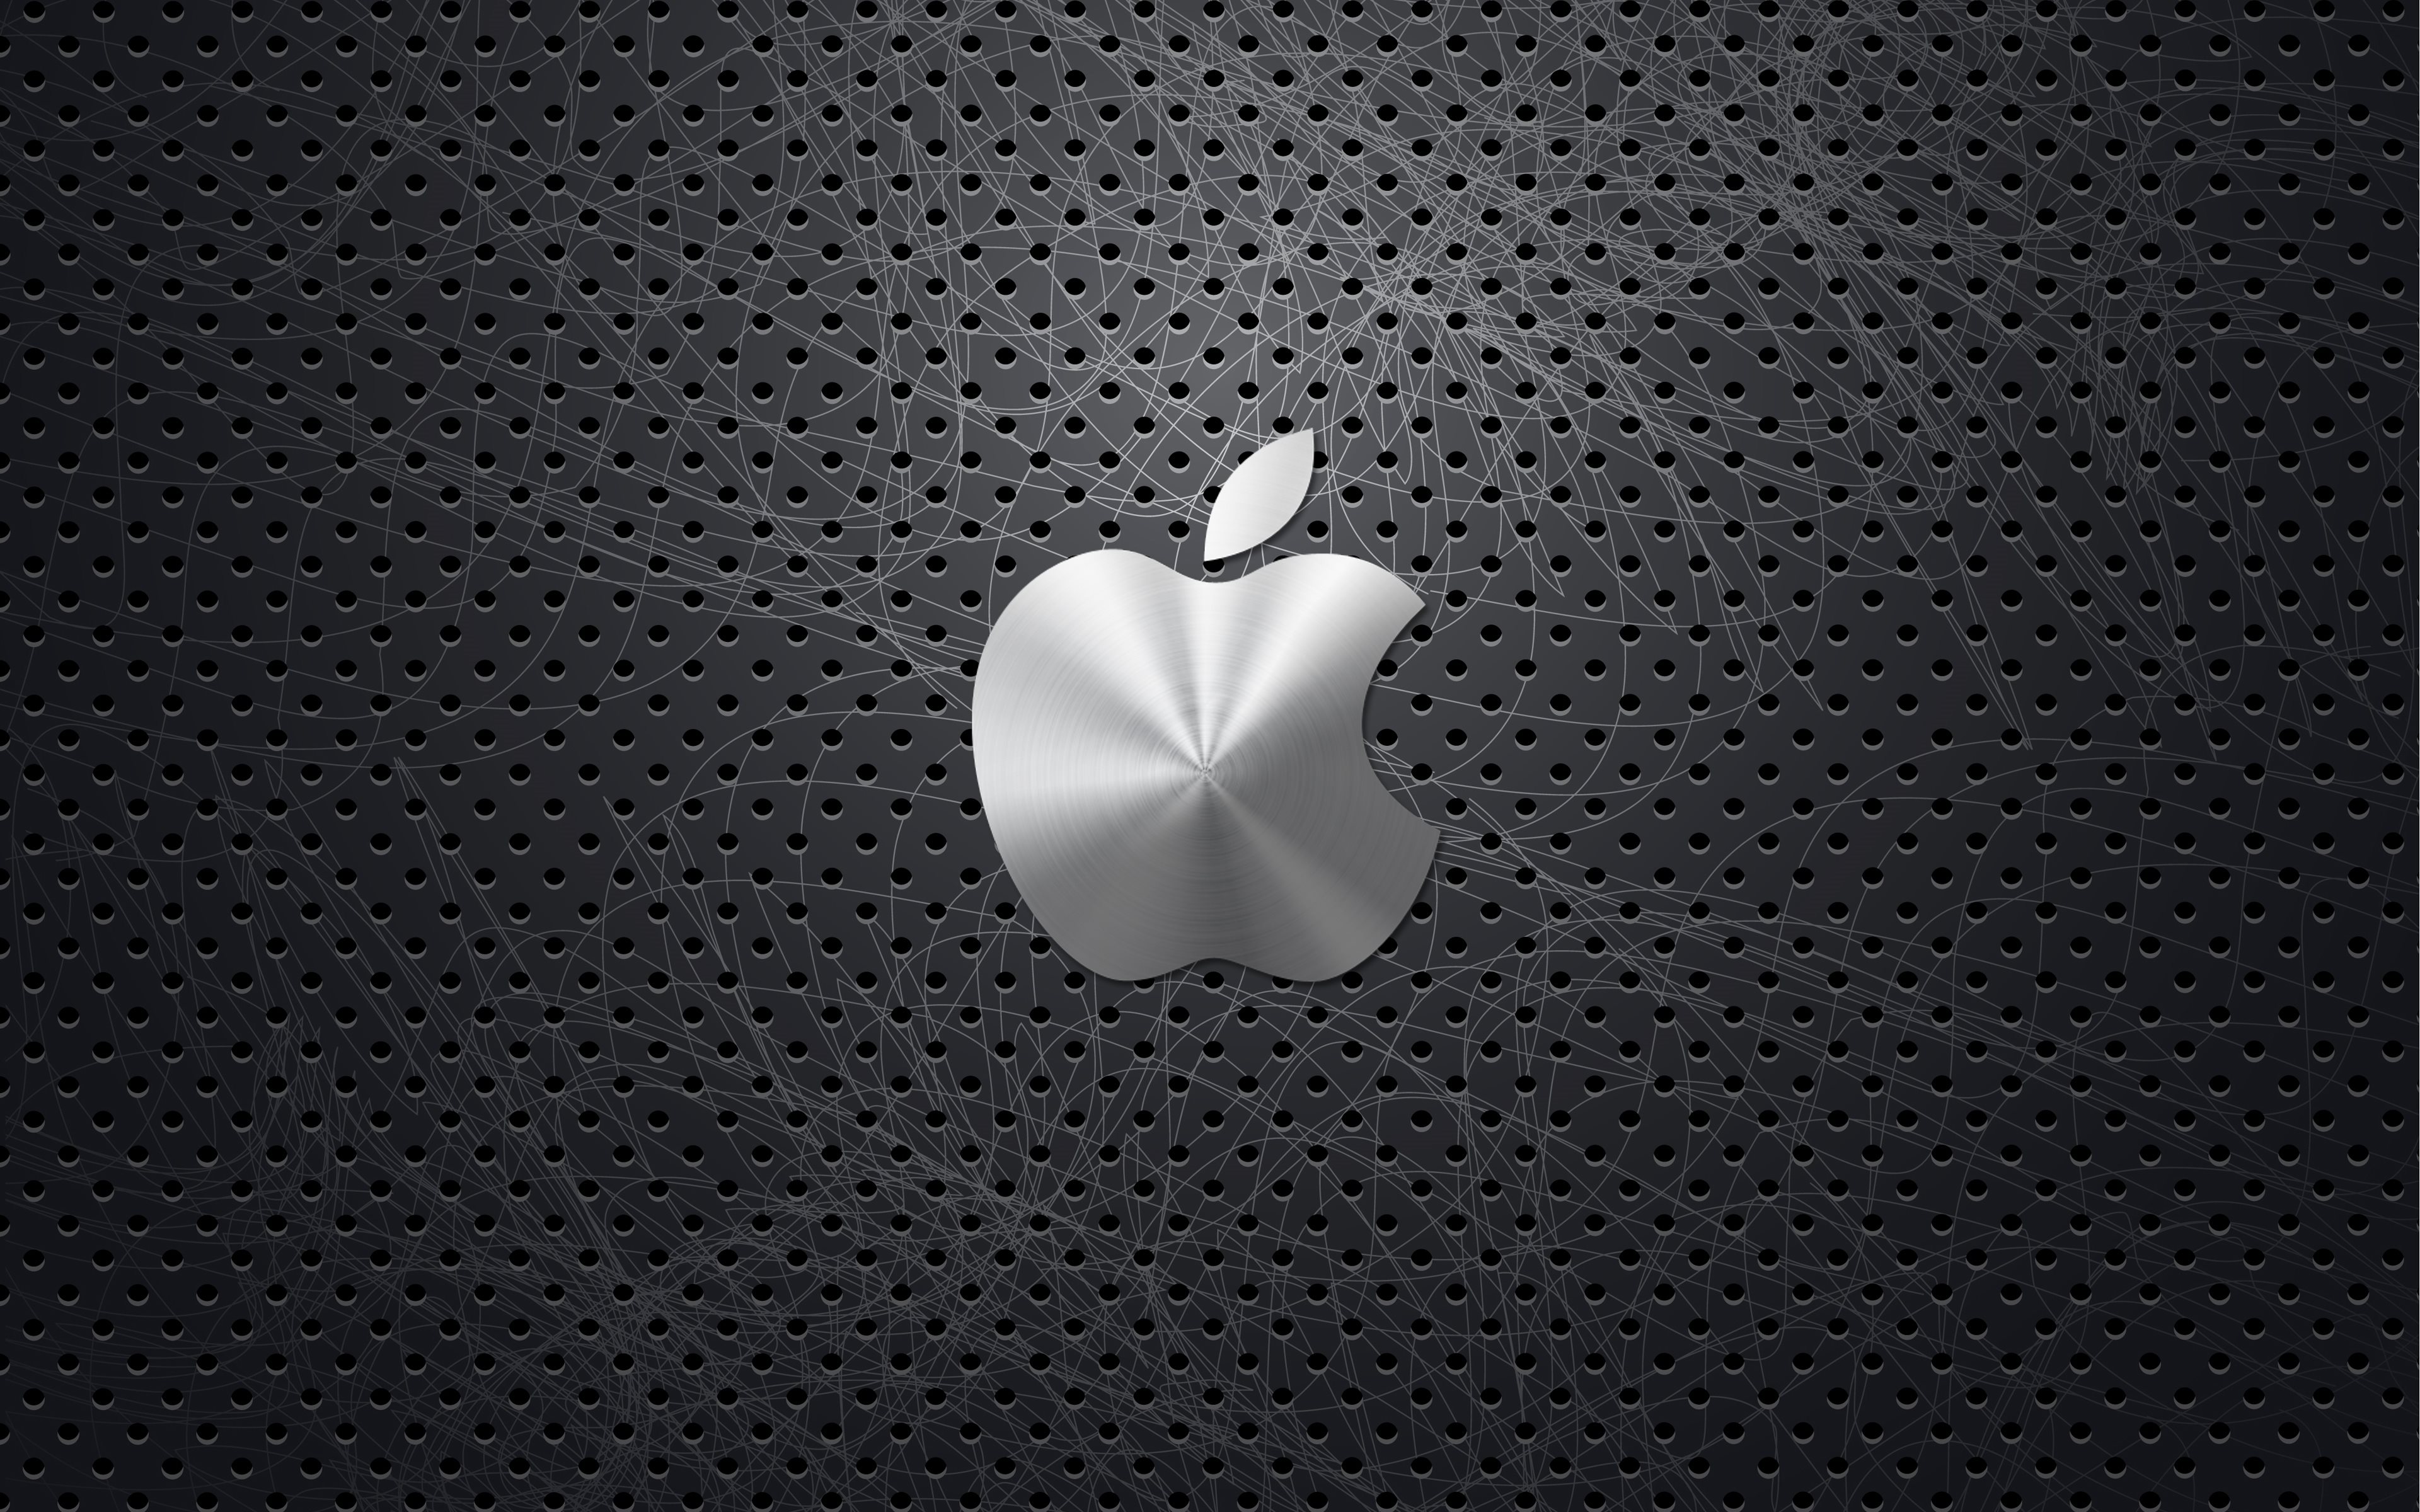 Apple - HD Wallpaper 